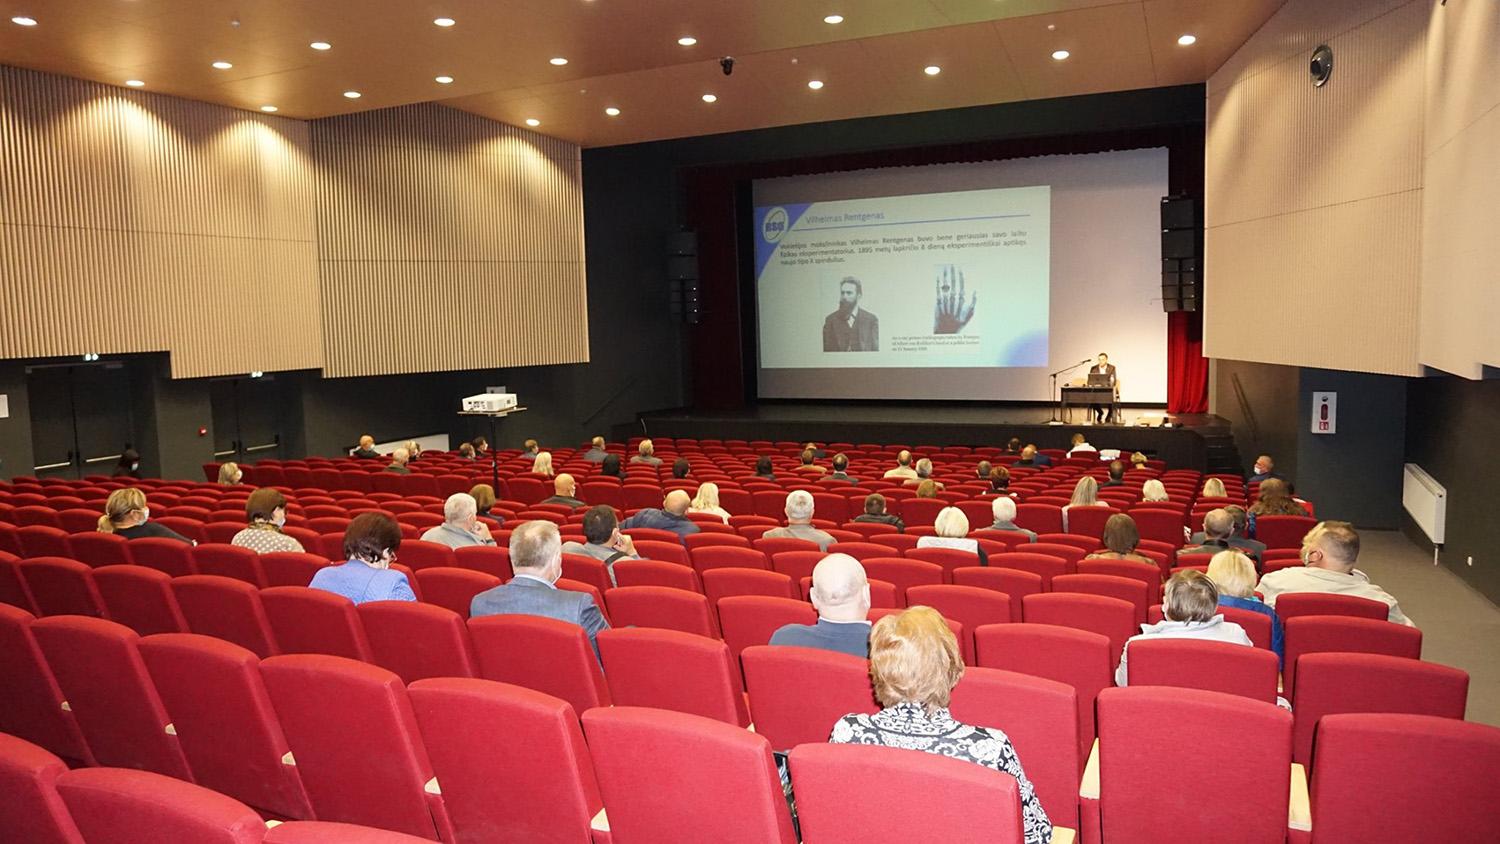 Seminare – apie atominės elektrinės grėsmę / Seminare kalbėta apie Lietuvos pašonėje pastatytos Astravo atominės elektrinės grėsmę.